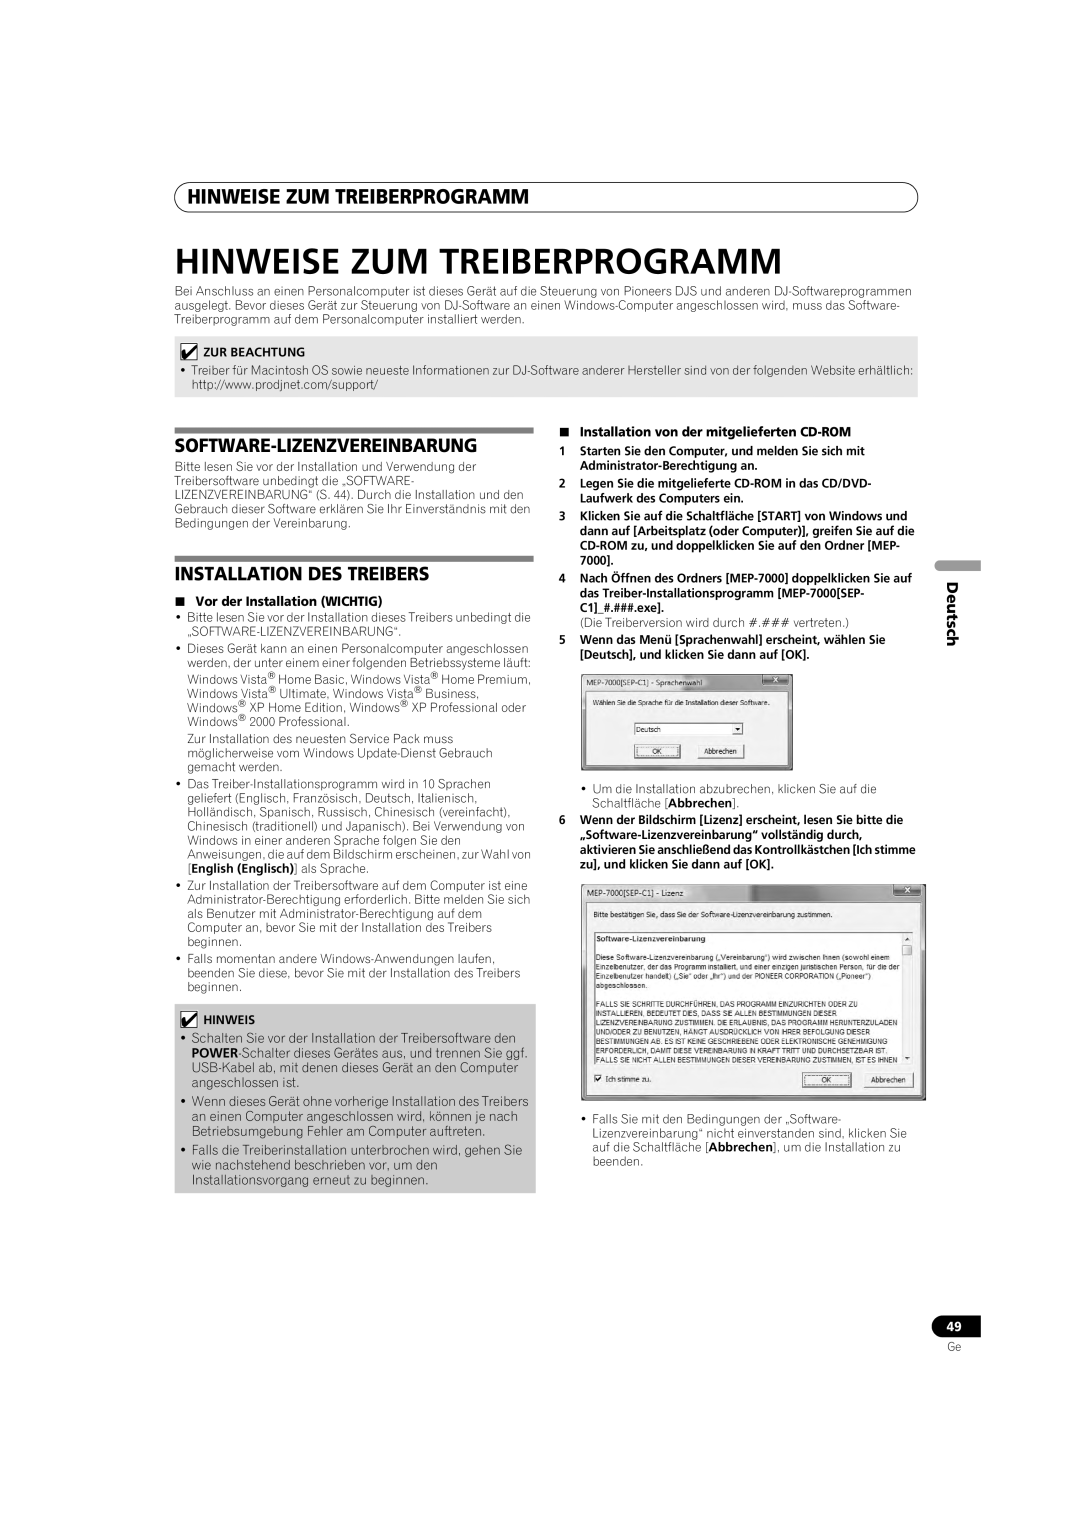 Pioneer MEP-7000 Hinweise Zum Treiberprogramm, Installation Des Treibers, Software-Lizenzvereinbarung, Deutsch 